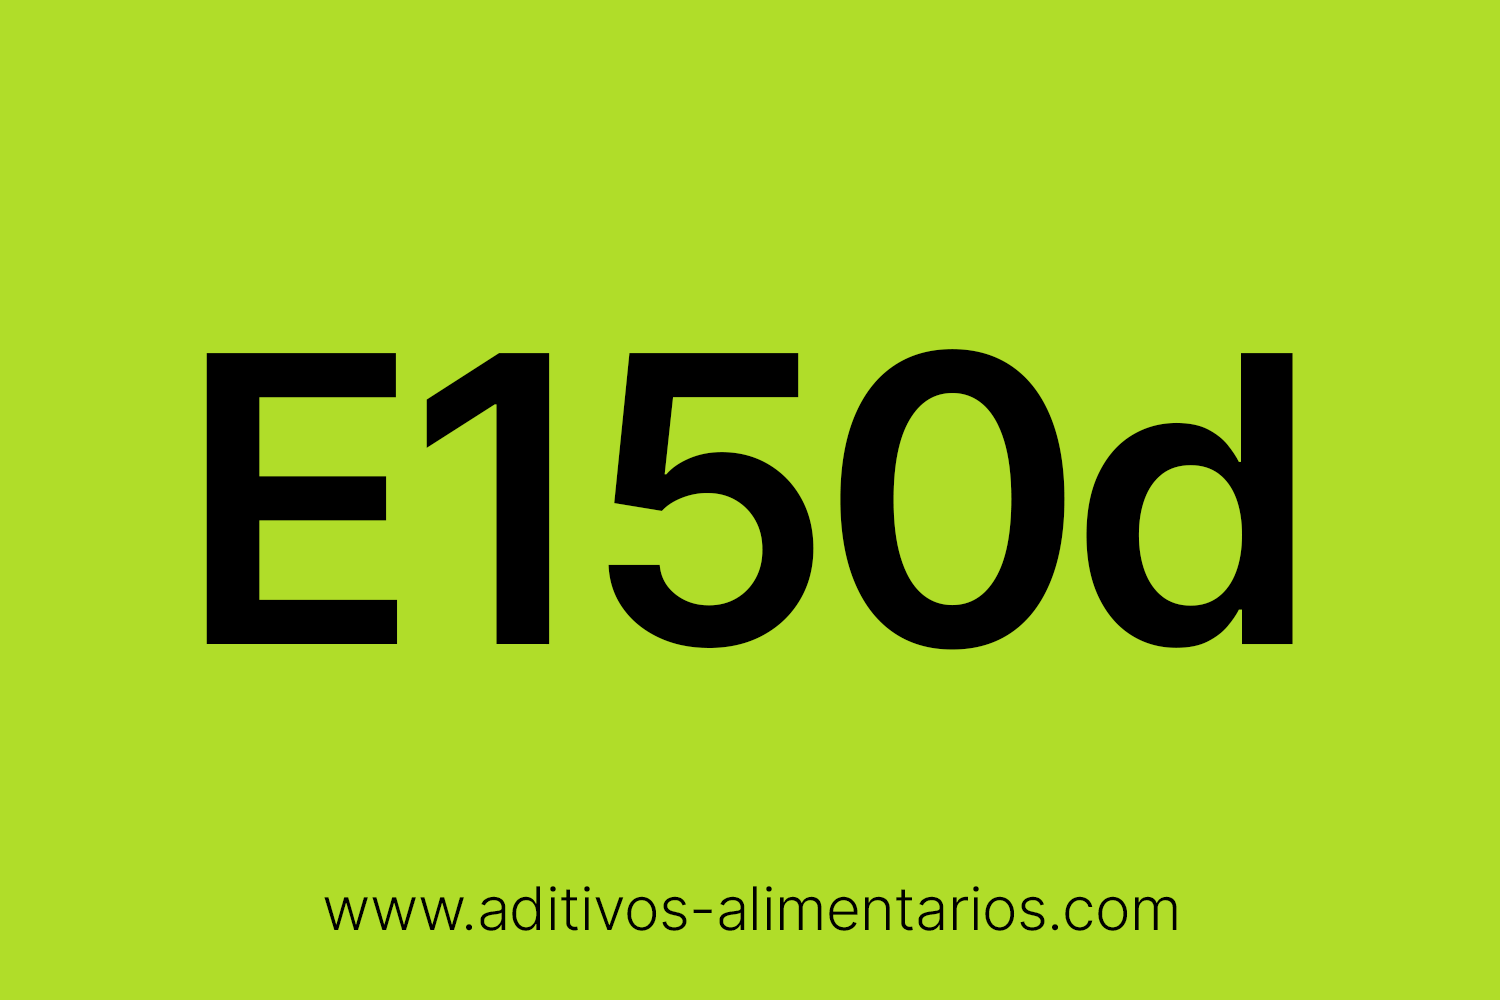 Aditivo Alimentario - E150d - Caramelo Amónico de Sulfito